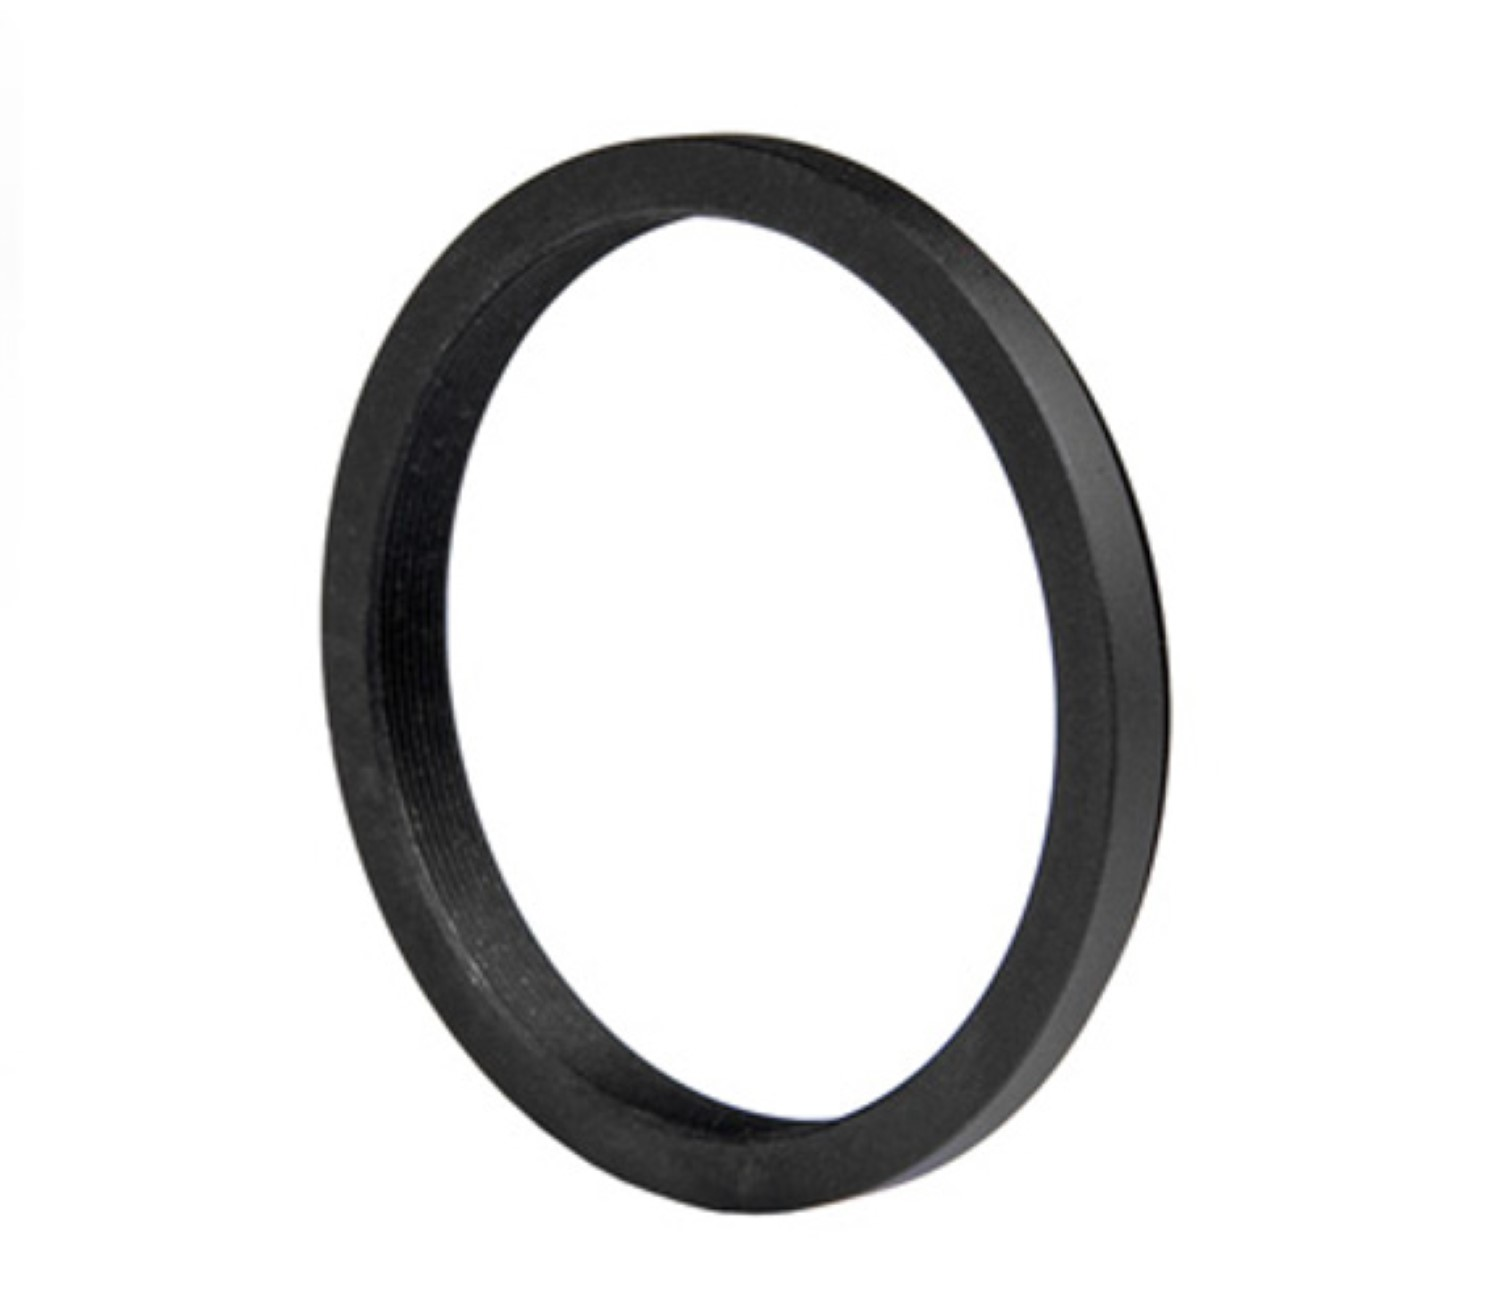 mit Ring, Black, für Step-Down Adapter, Objektive passend Filtergewinde AYEX